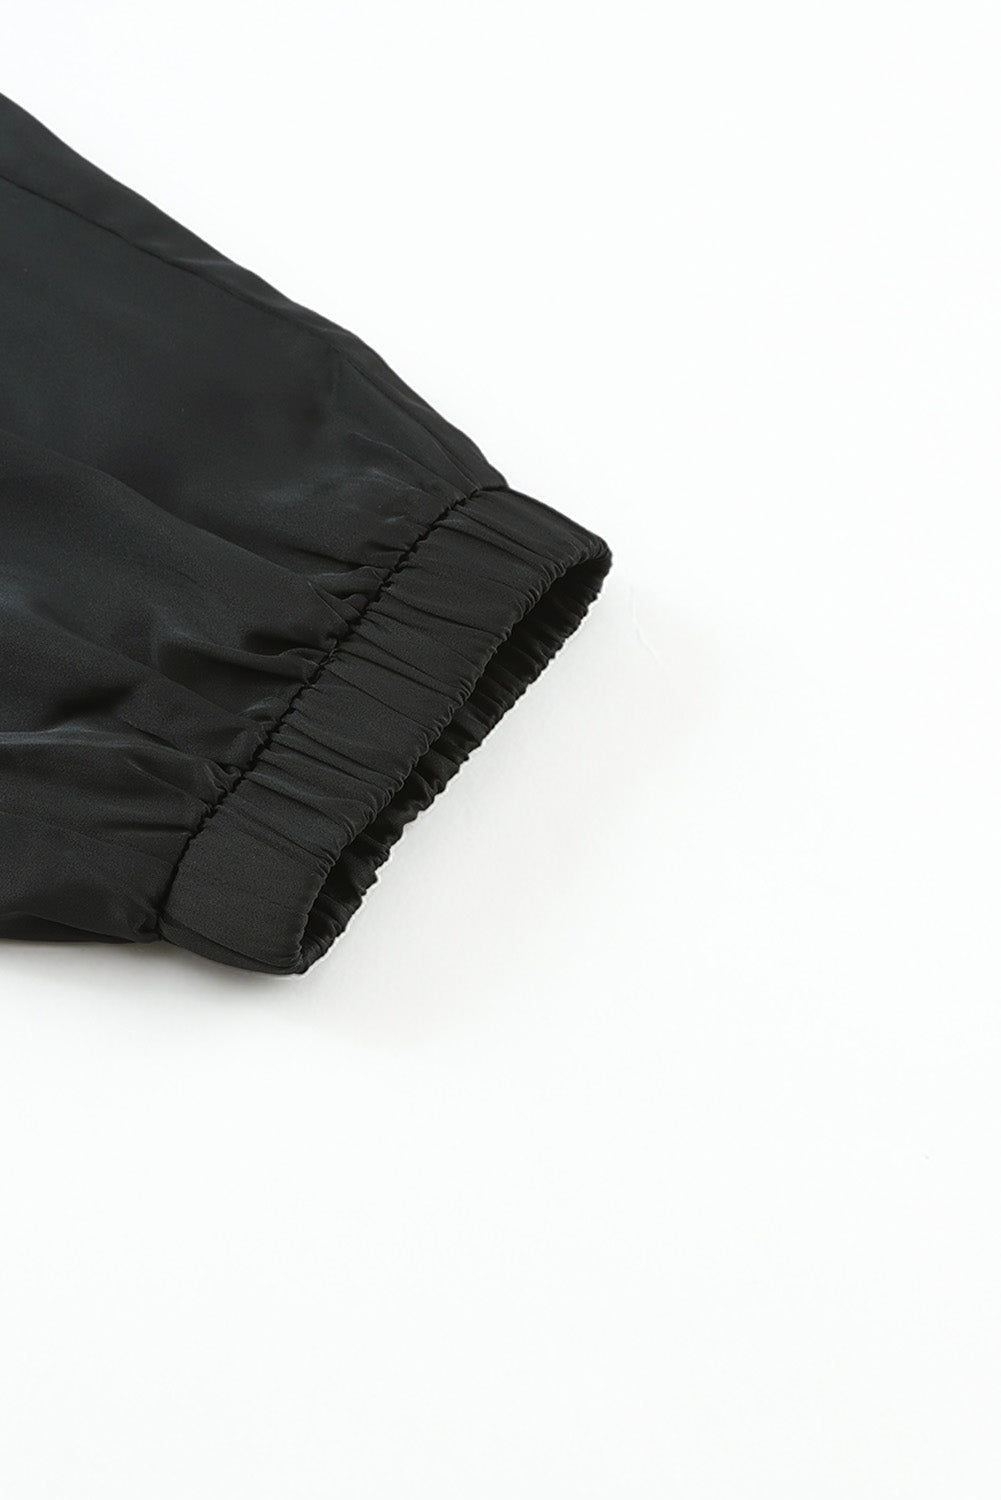 Crne satenske hlače s džepovima i elastičnim strukom